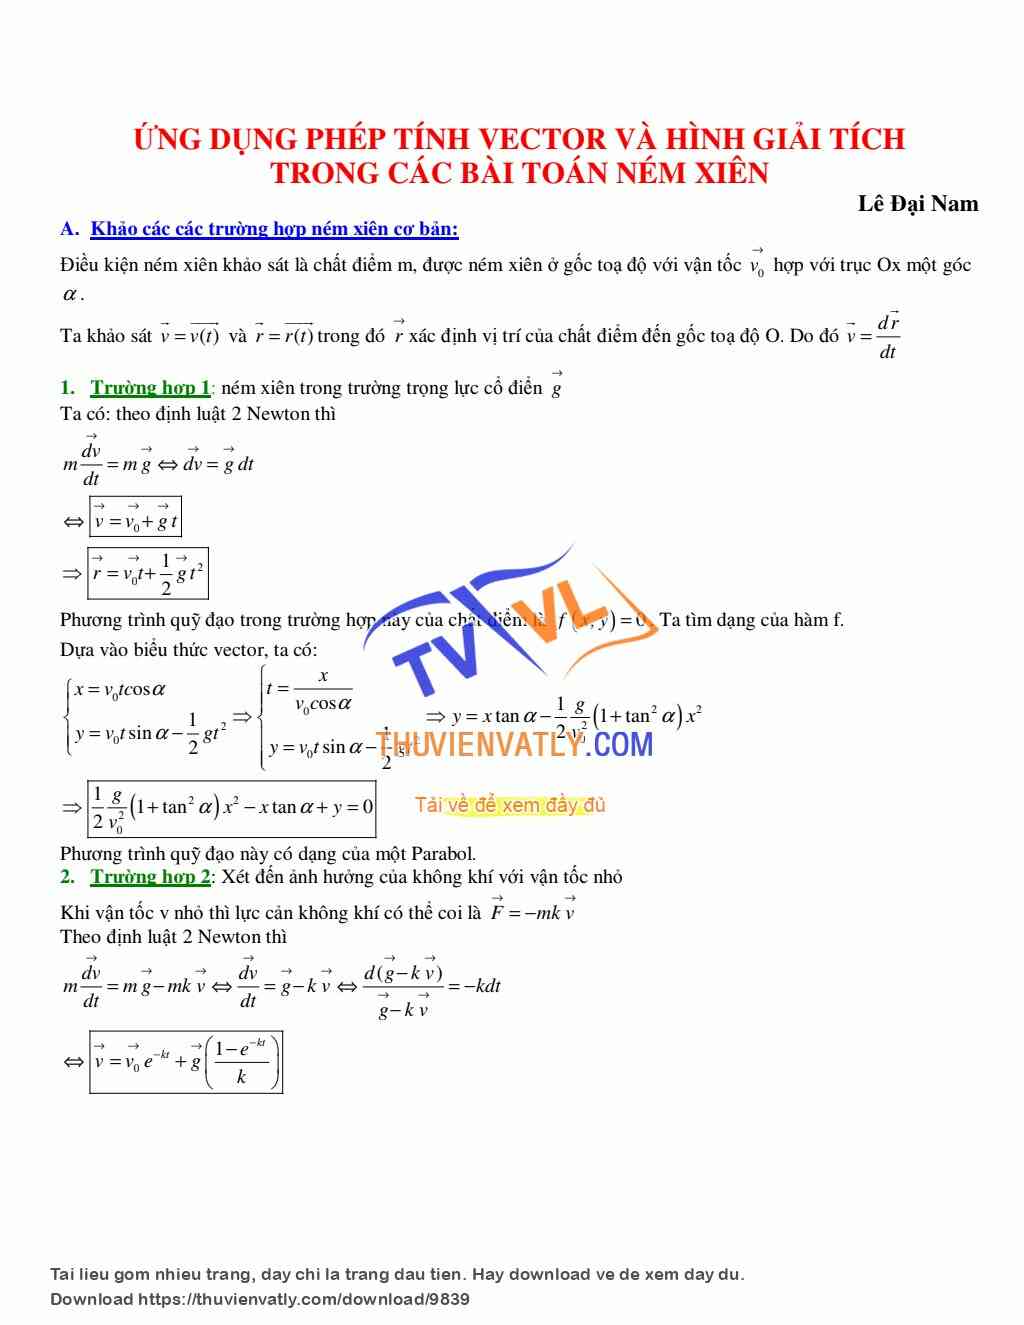 Ứng dụng phép tính vector và hình giải tích vào bài toán ném xiên - Lê Đại Nam